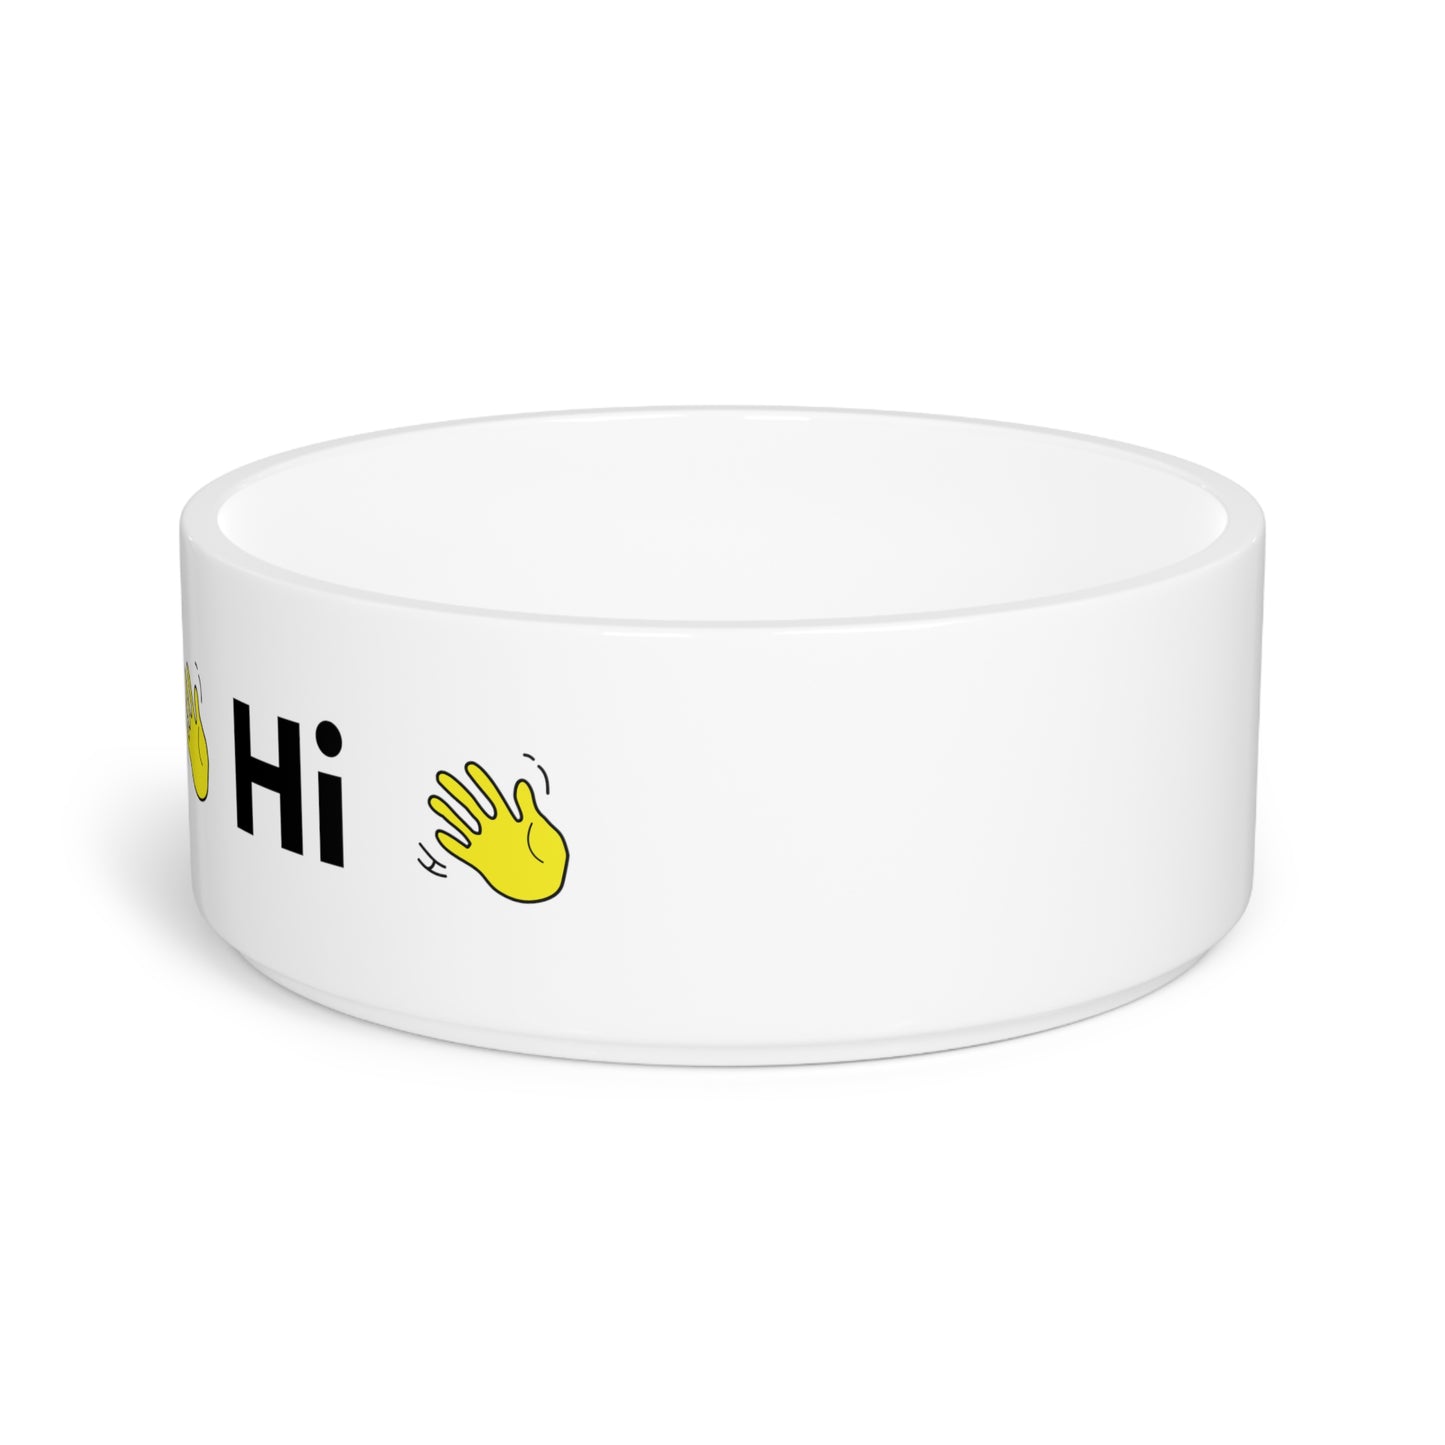 Hi 👋 Pet Bowl